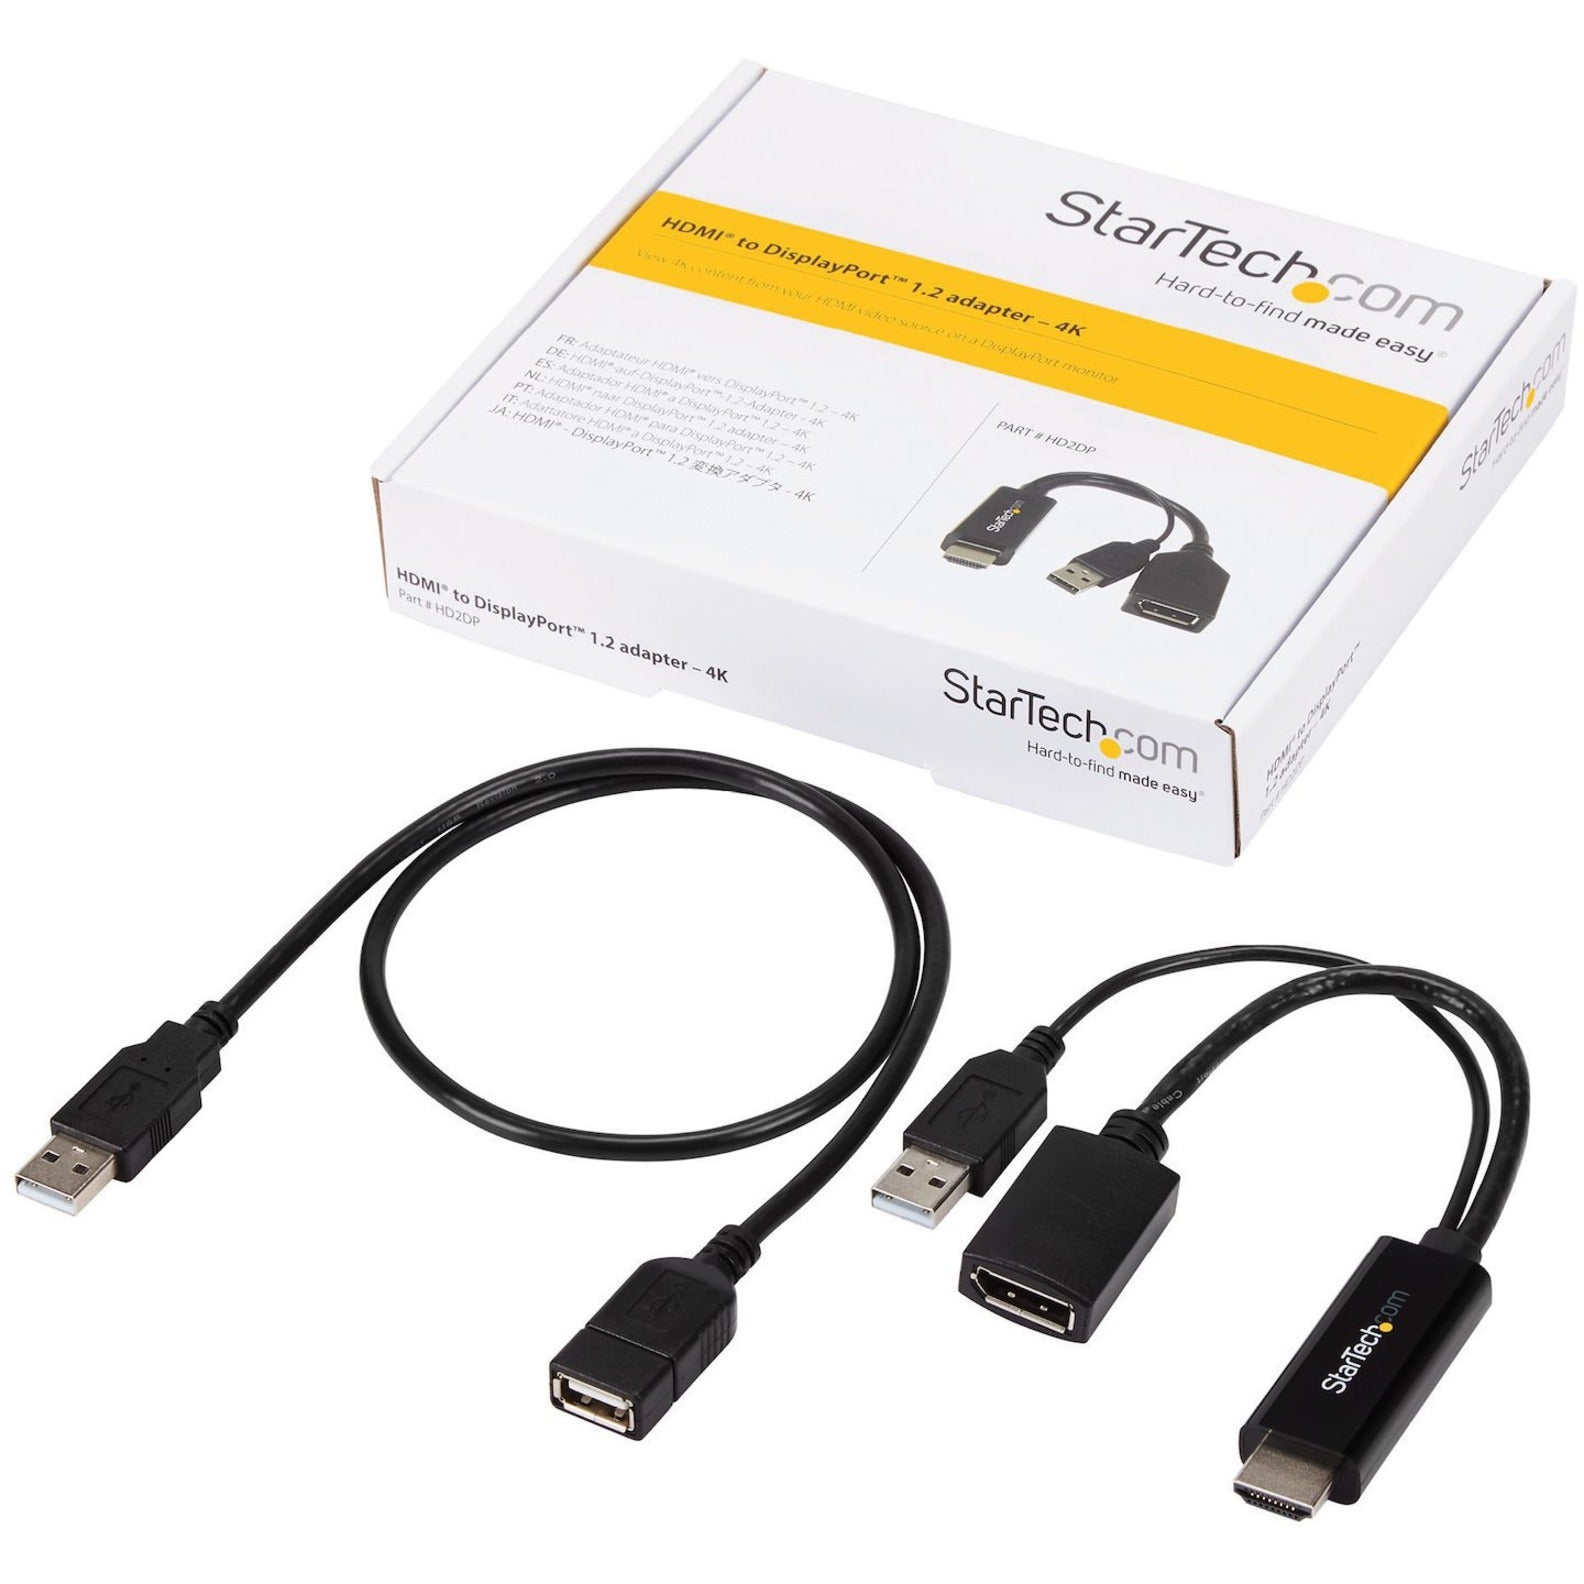 محول StarTech.com HD2DP HDMI إلى DisplayPort - محول HDMI إلى DP مع طاقة USB - 4K، محول فيديو سهل الاستخدام  اسم العلامة التجارية: ستارتيك.كوم